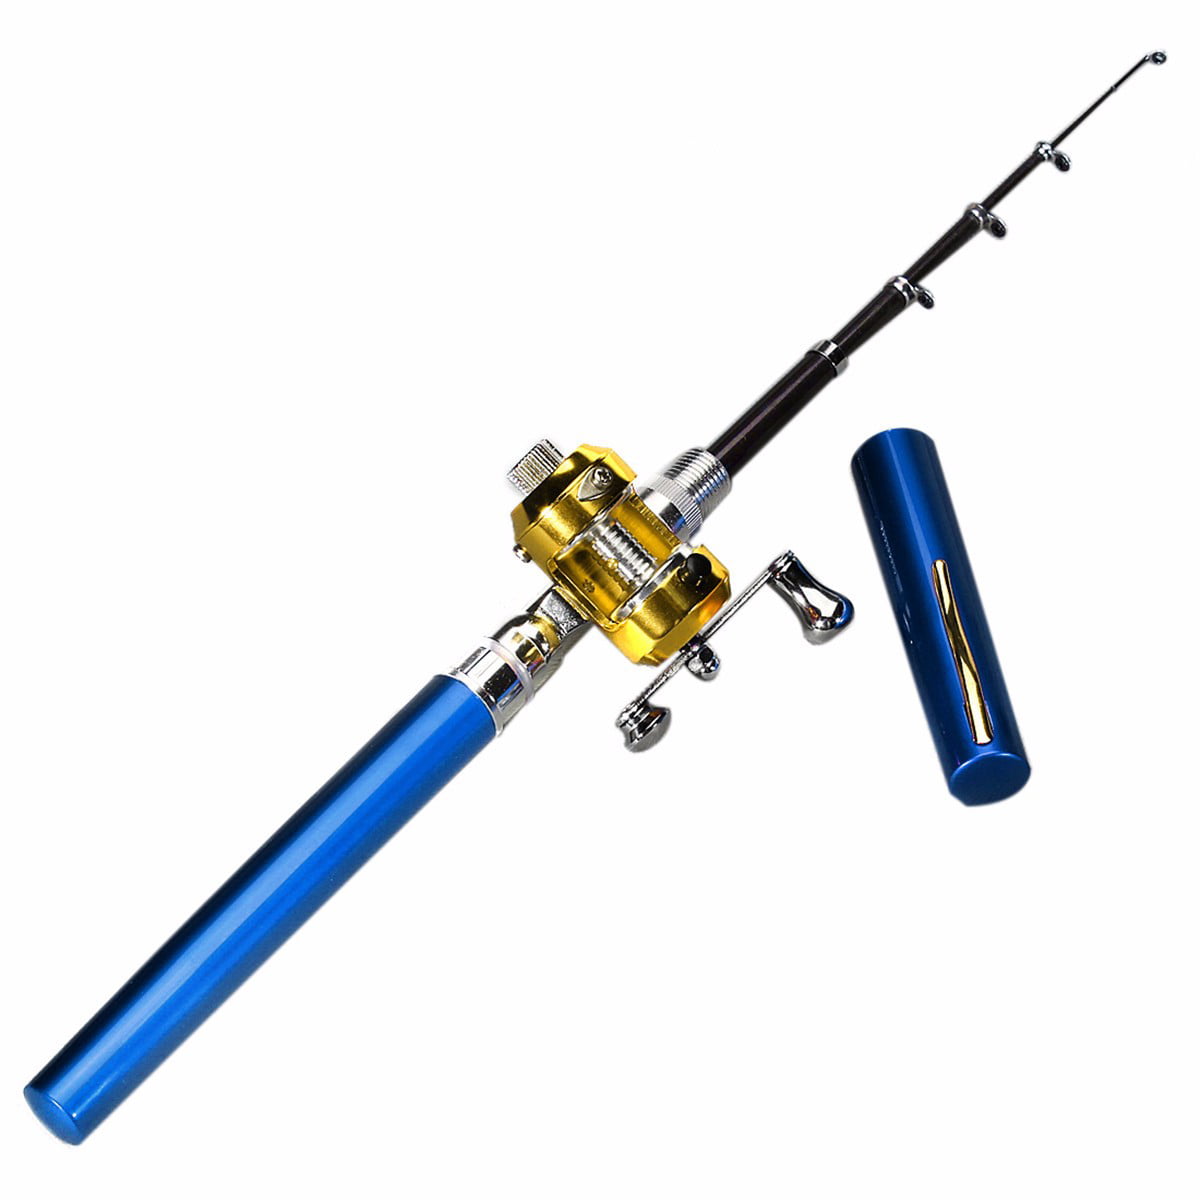 Telescopic Mini Portable Pocket Fish Aluminum Alloy Pen Fishing Rod Pole Reel